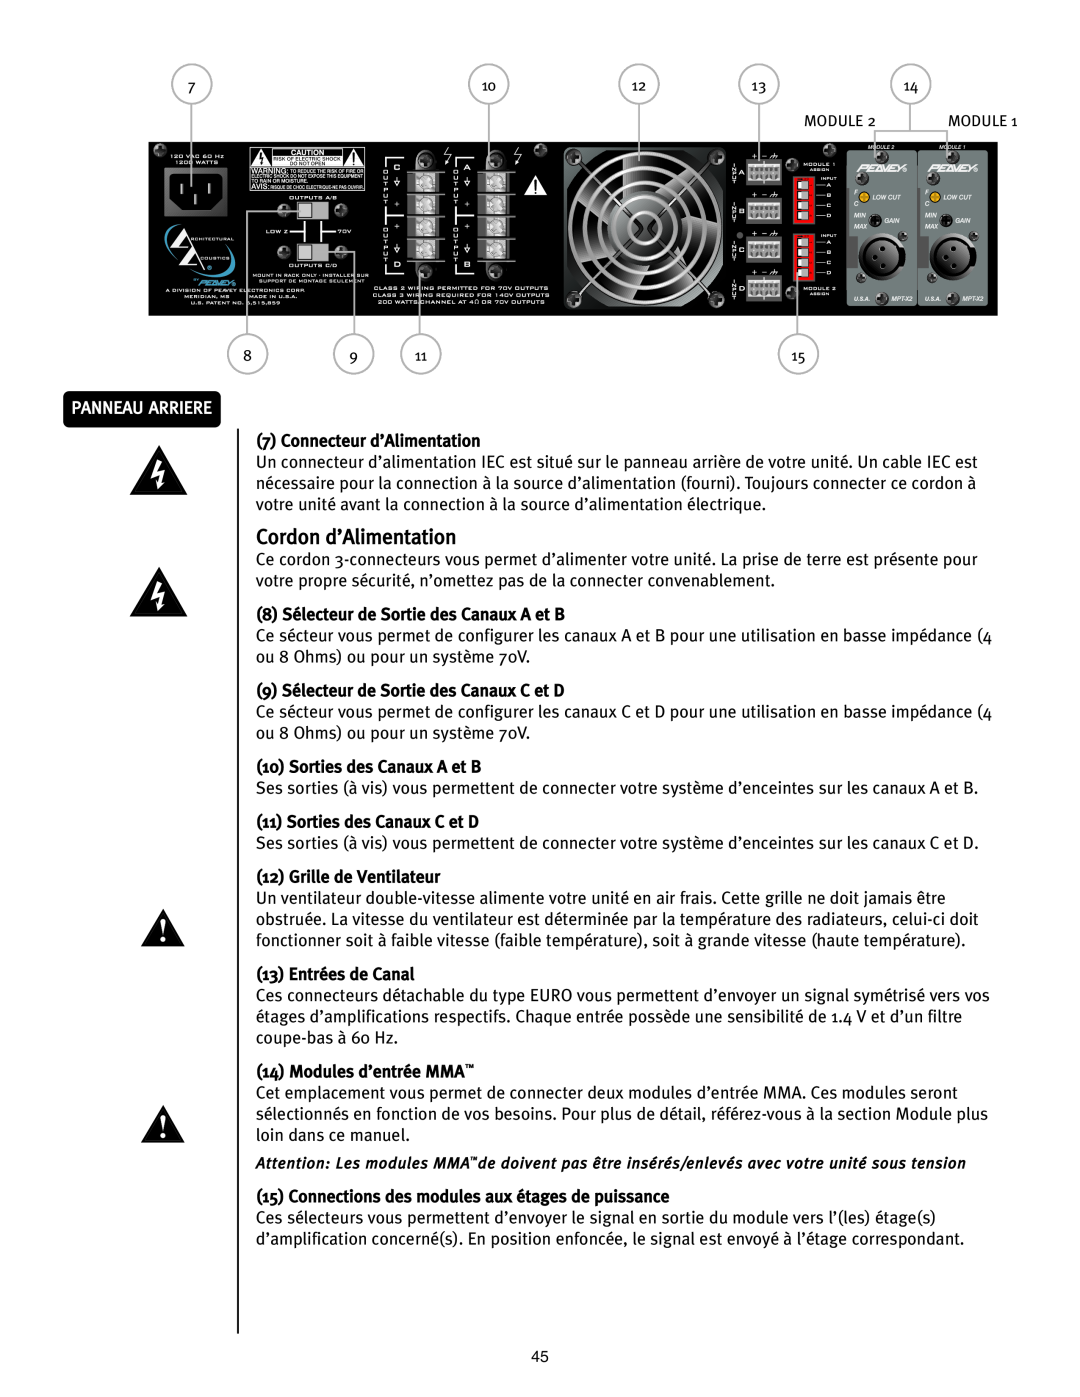 Peavey ICS 4200 user manual Cordon d’Alimentation, Panneau Arriere 